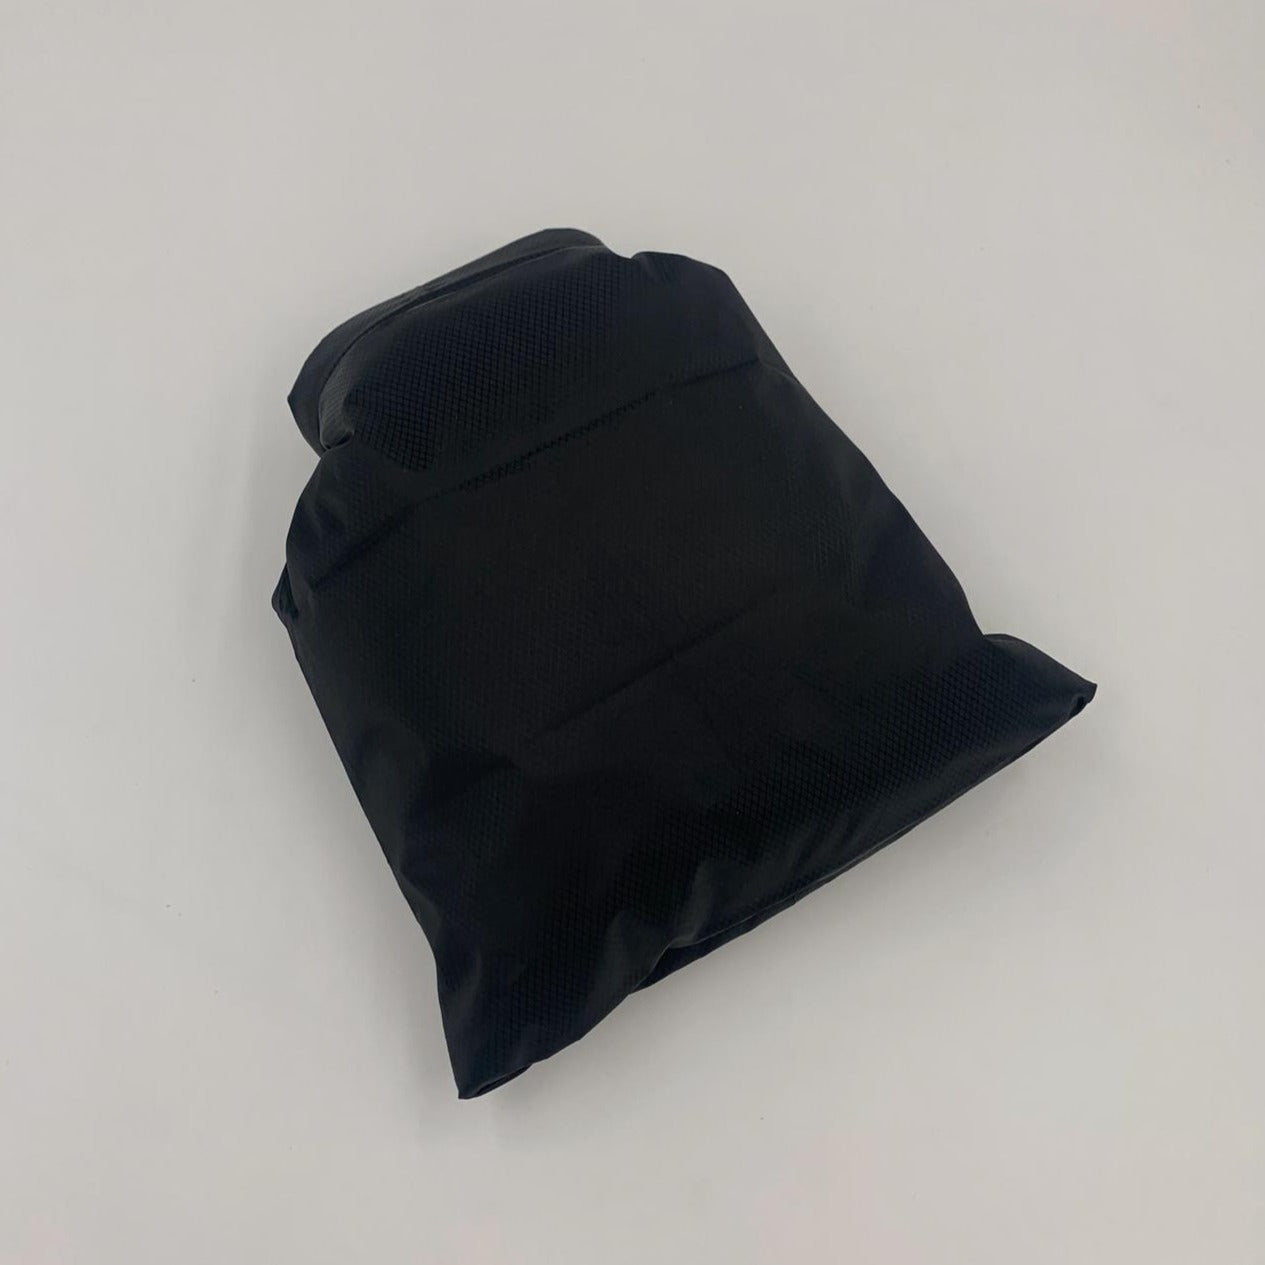 Waterproof bag, black